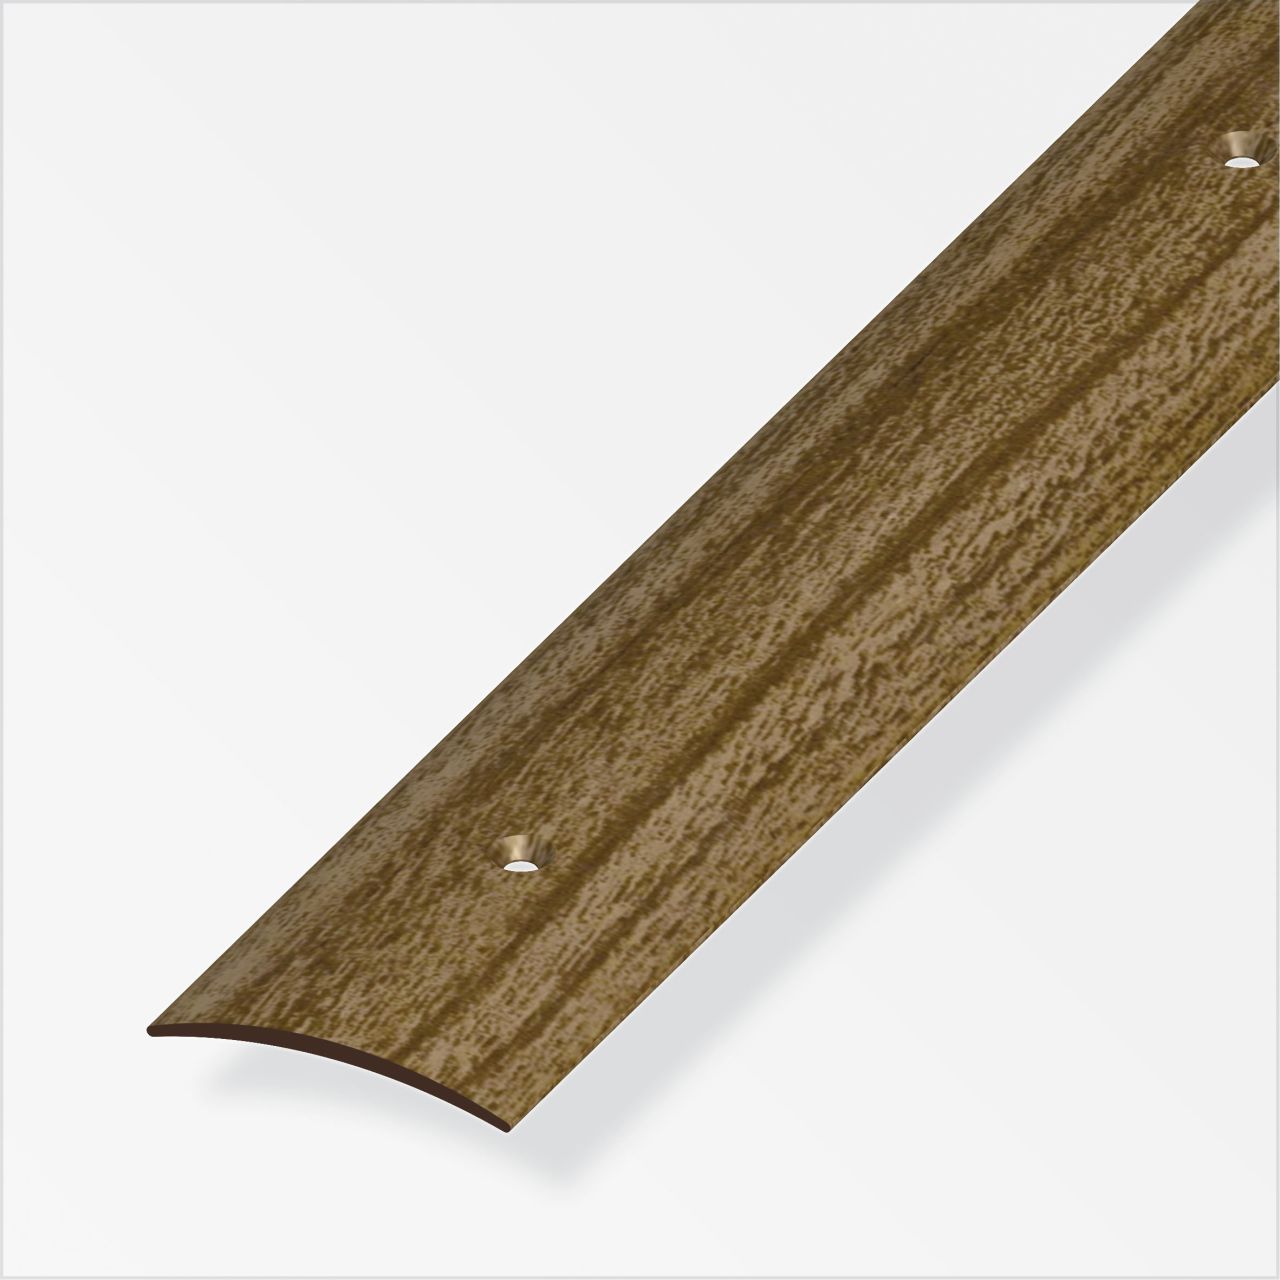 alfer Übergangsprofil 1 m, 30 x 5 mm, PVC (Kunststoff), glatt, nussbaum, nussbaum von ALFER